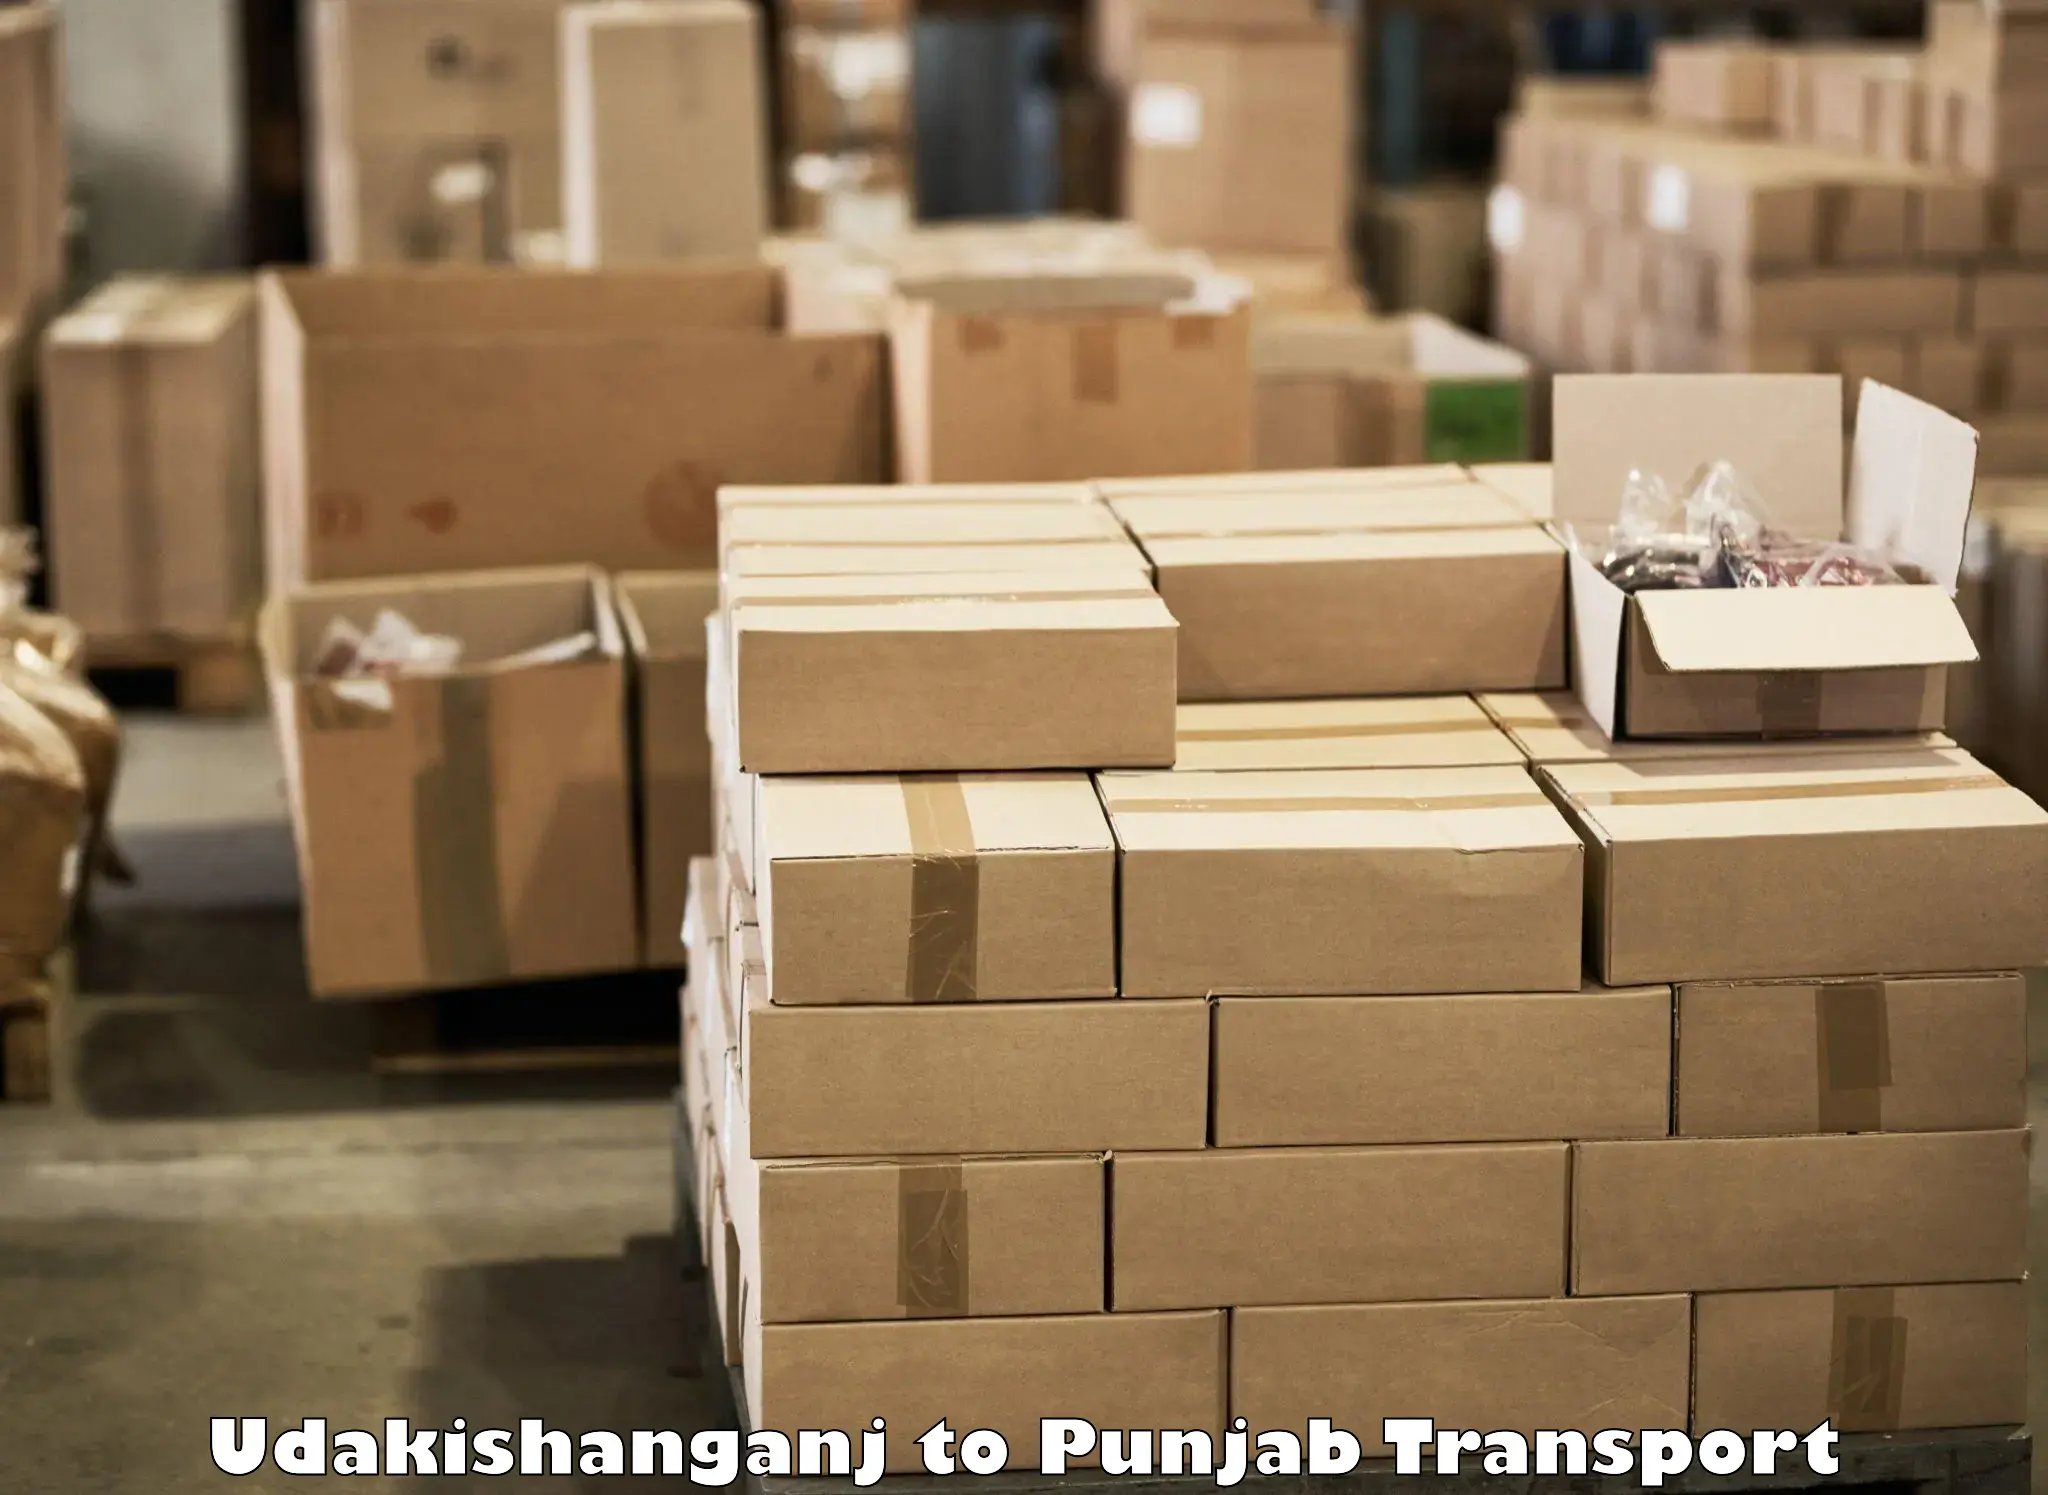 Commercial transport service Udakishanganj to Ajnala